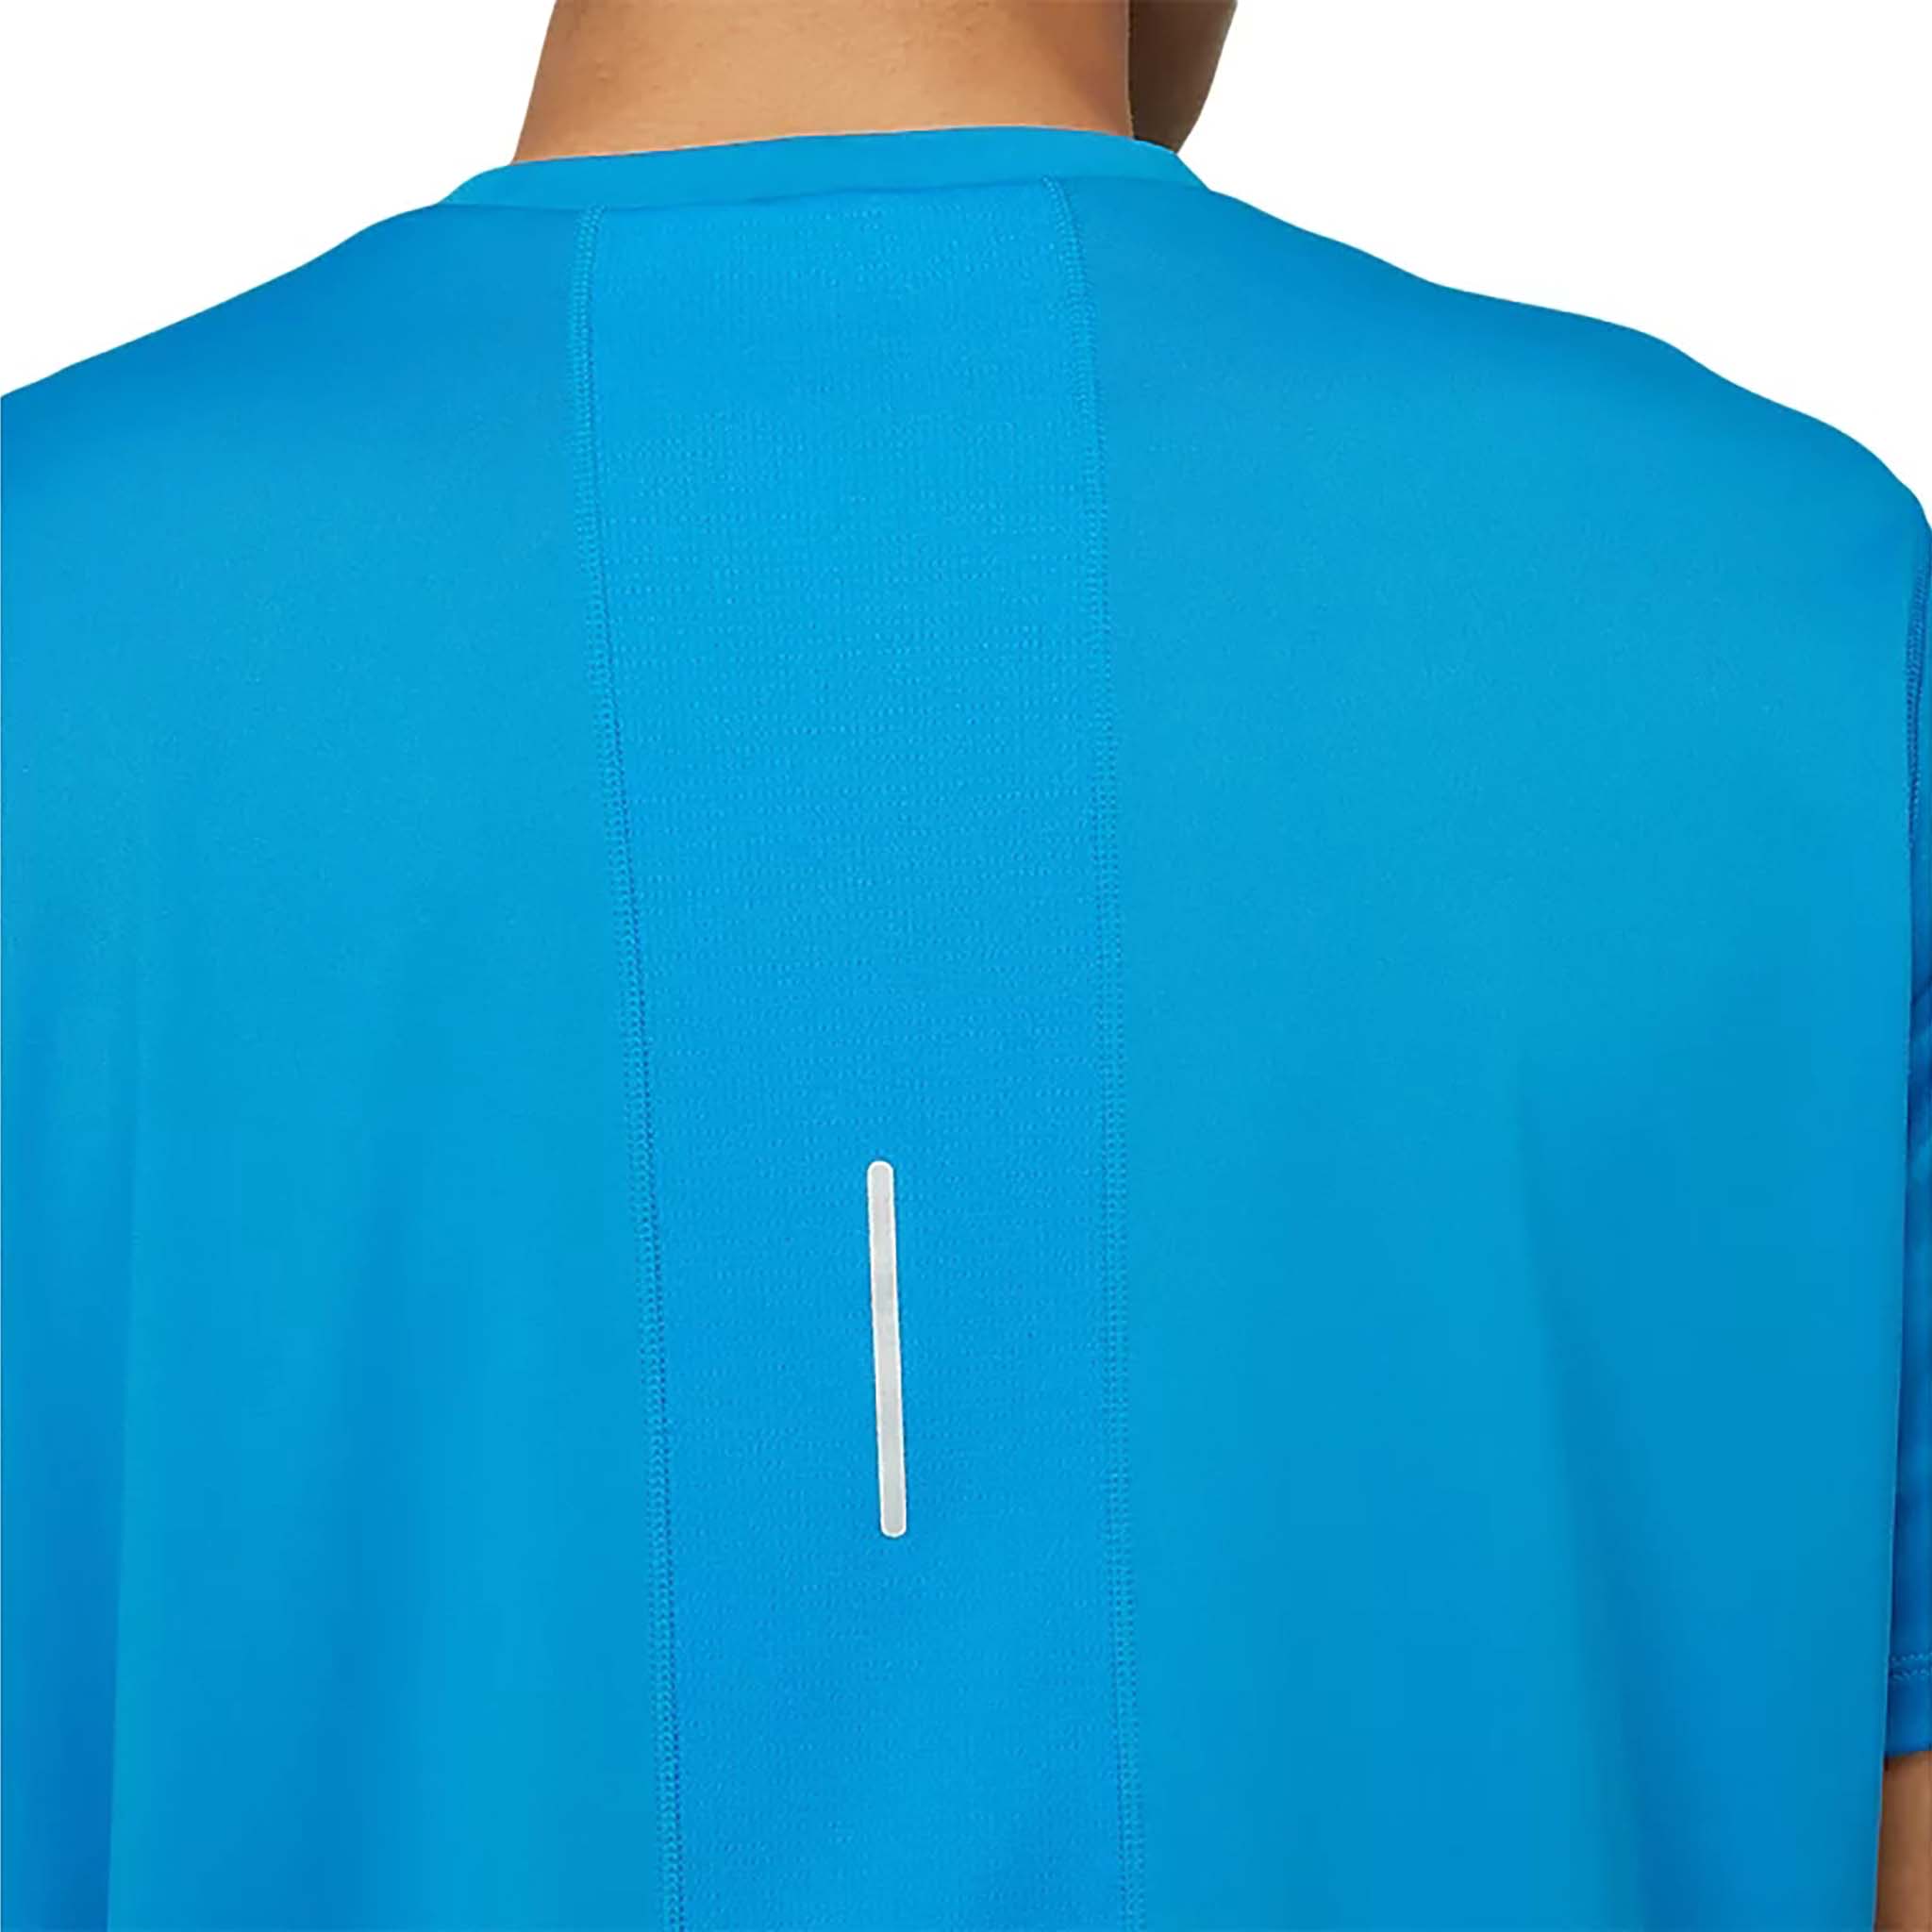 T-Shirt ASICS Running Homme CORE SS TOP Bleu ALBI RUN URBAIN 2023